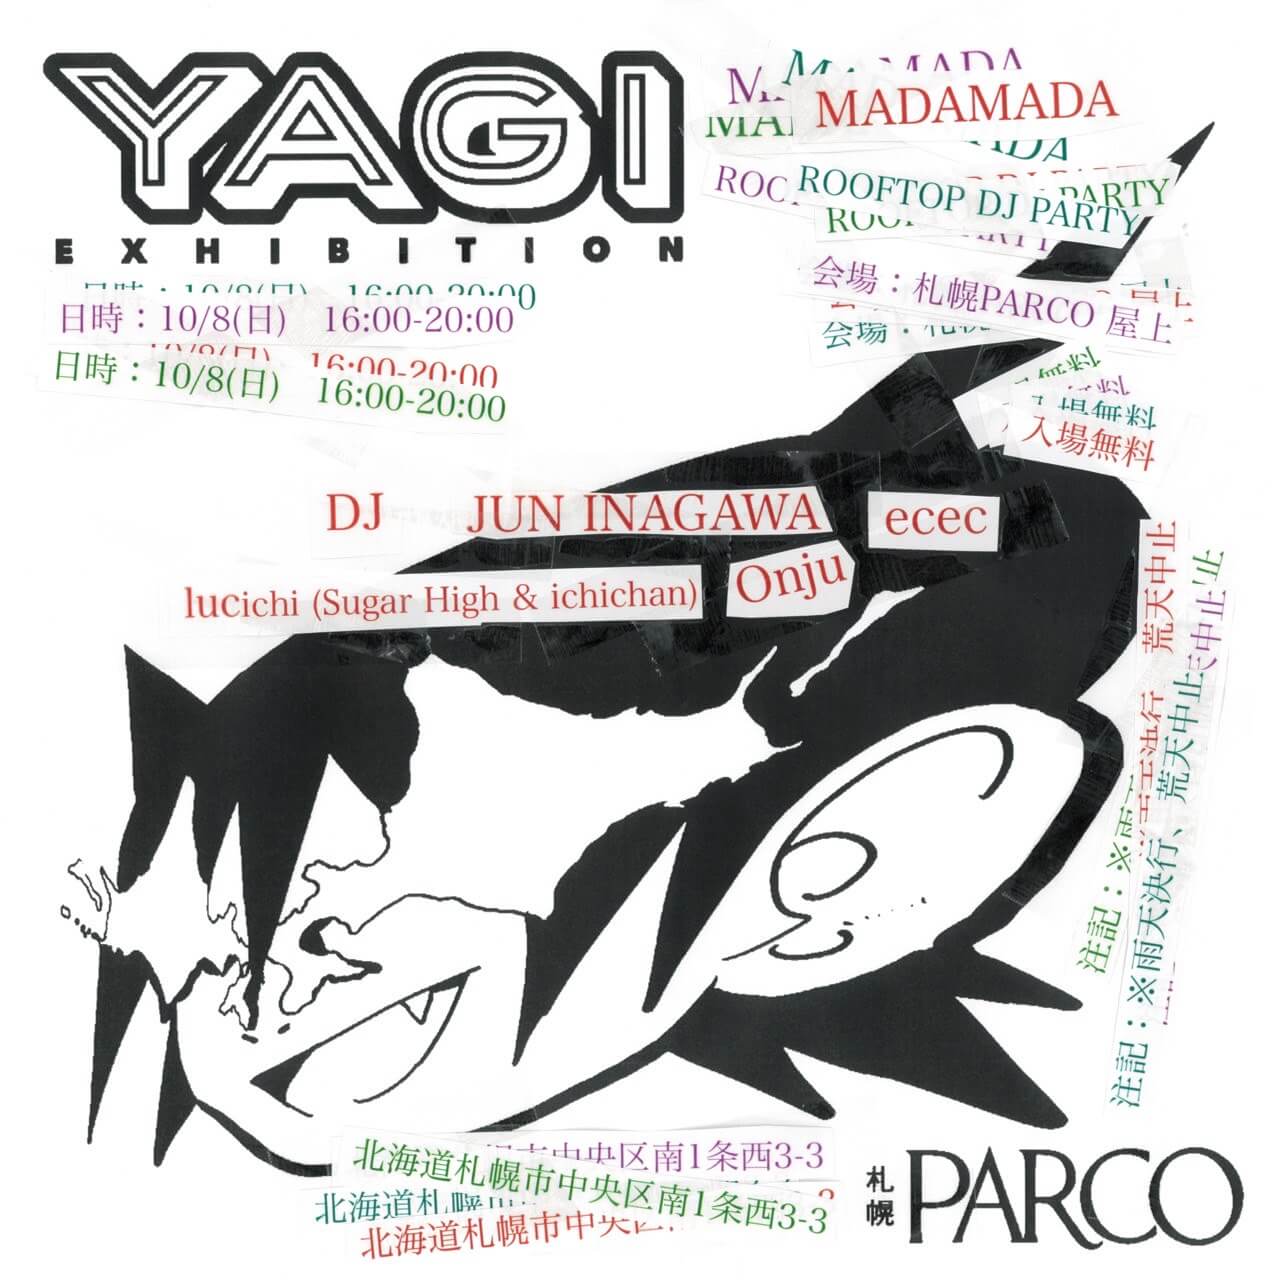 『MADAMADA』-YAGI EXHIBITION presents ROOFTOP DJ PARTY